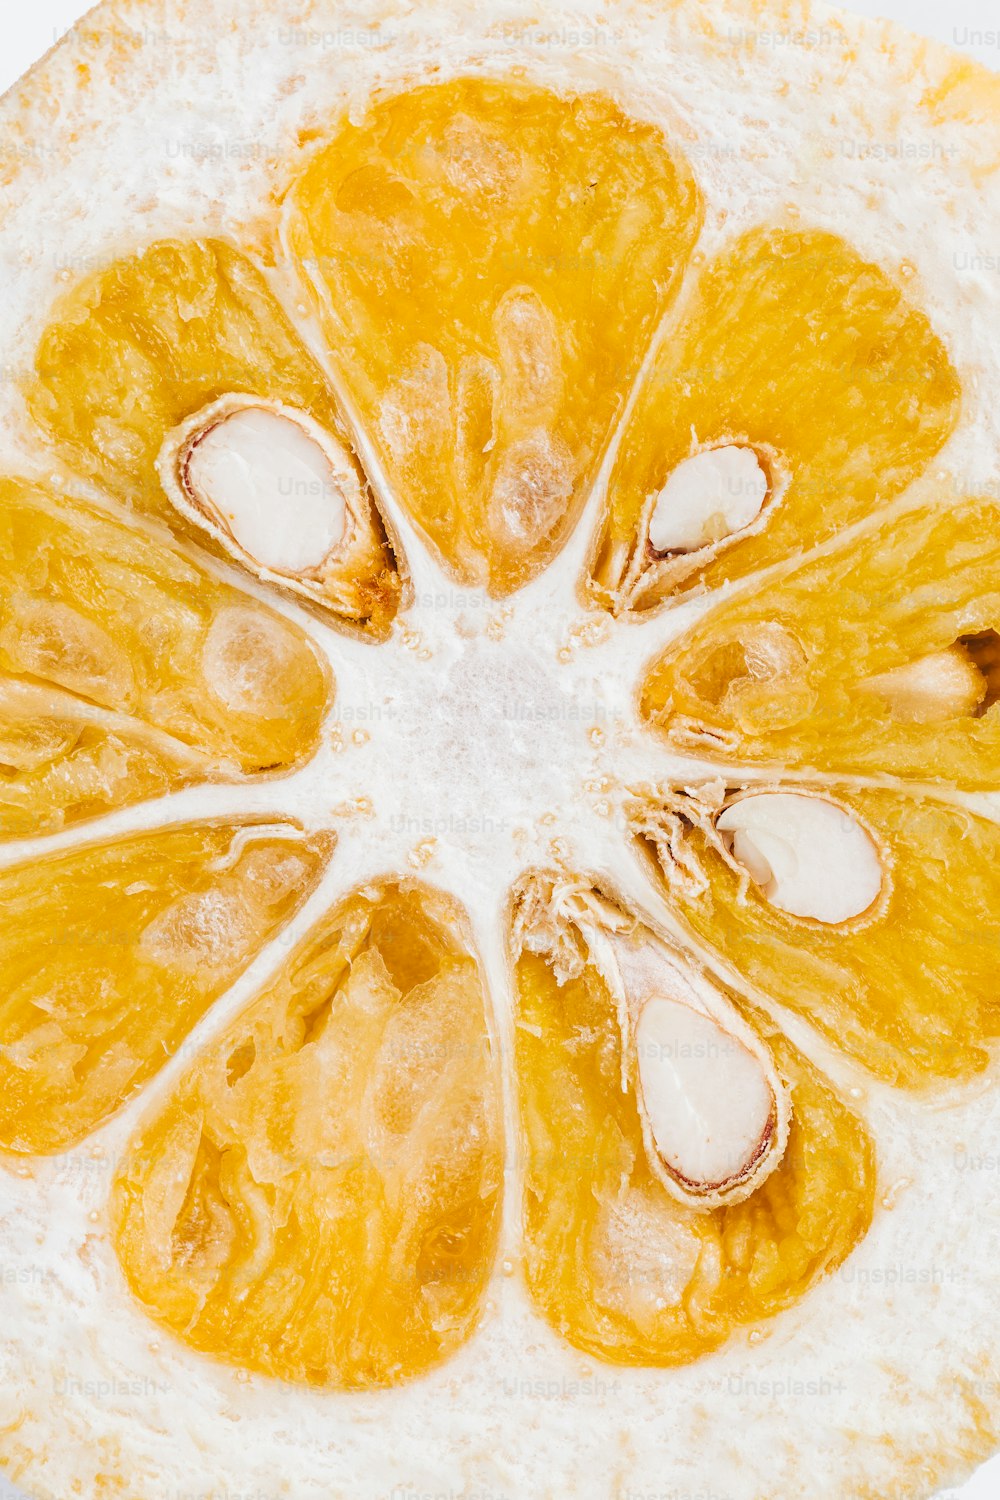 Un primer plano de una naranja en rodajas sobre una superficie blanca